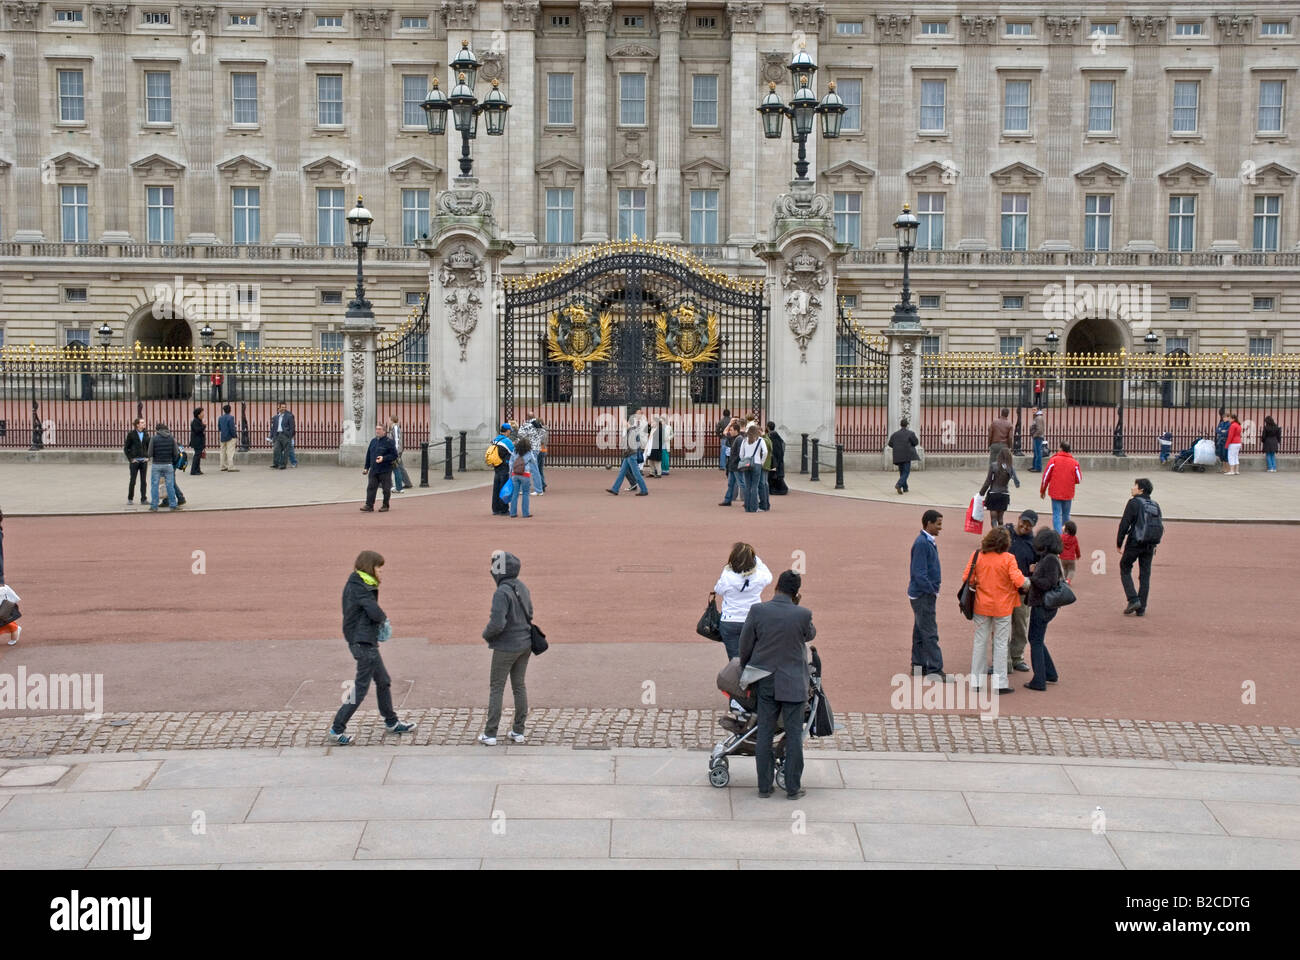 Buckingham Palace with tourists, London, England, UK Stock Photo